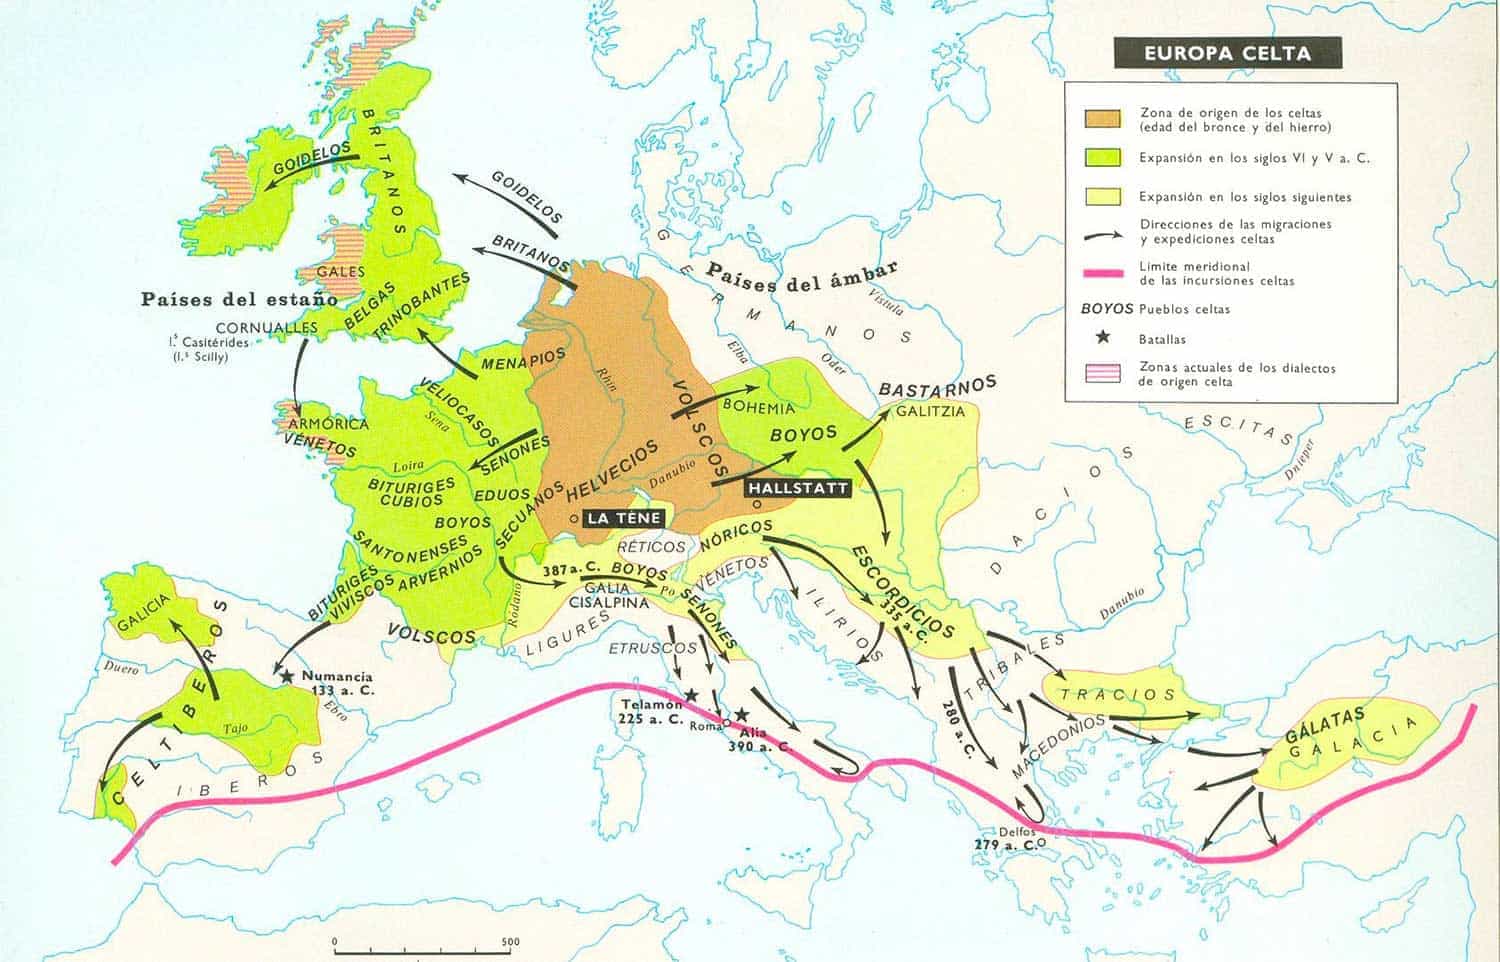 Mapa del Imperio Celta en la Edad de Hierro.